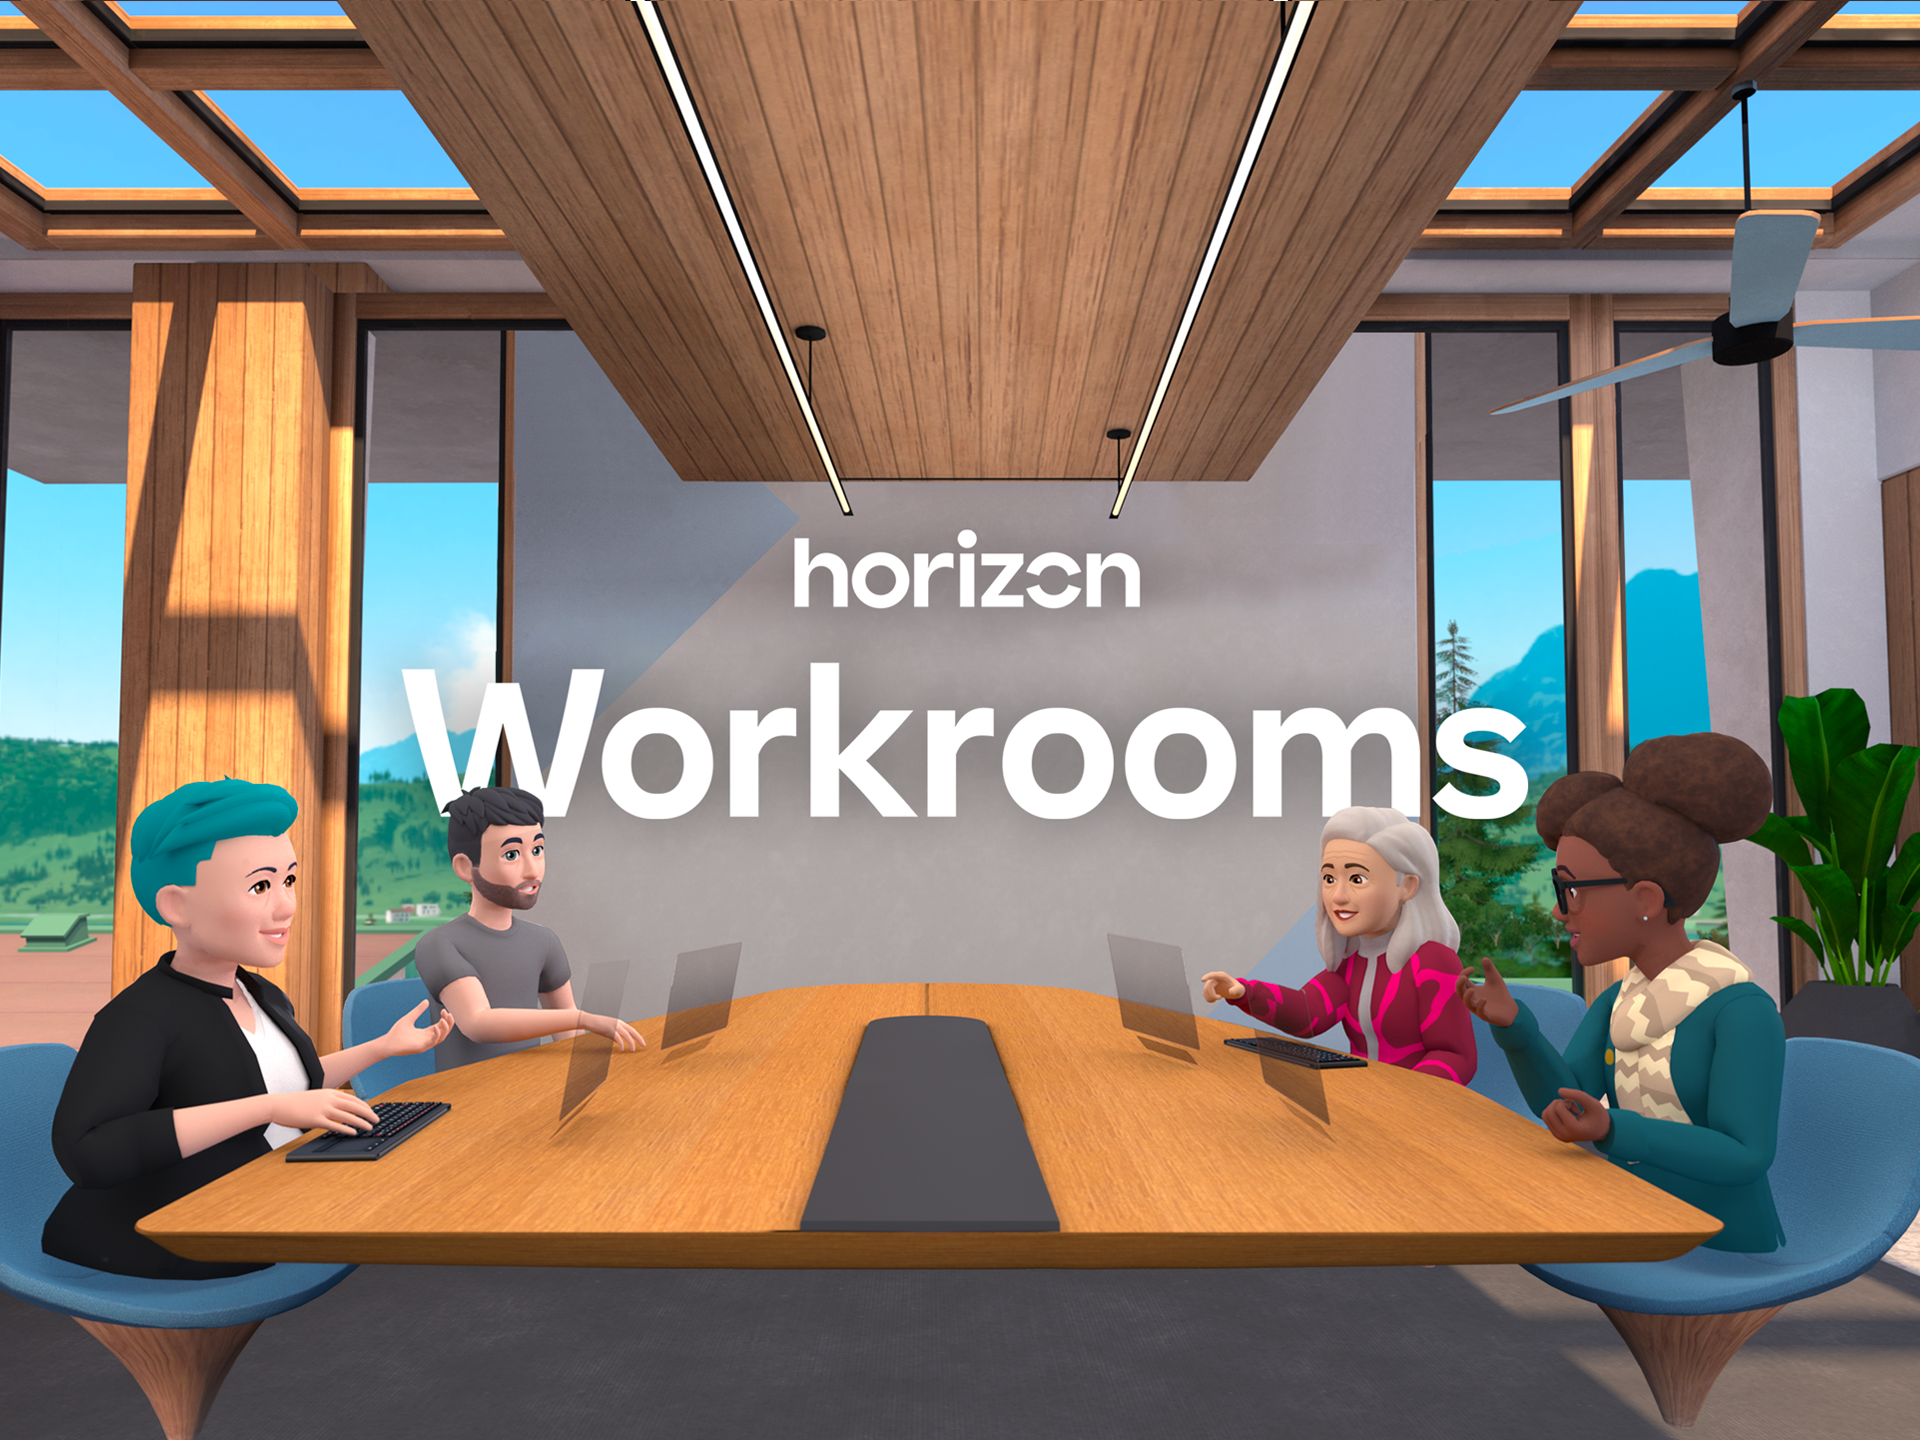 Facebook horizon workrooms model